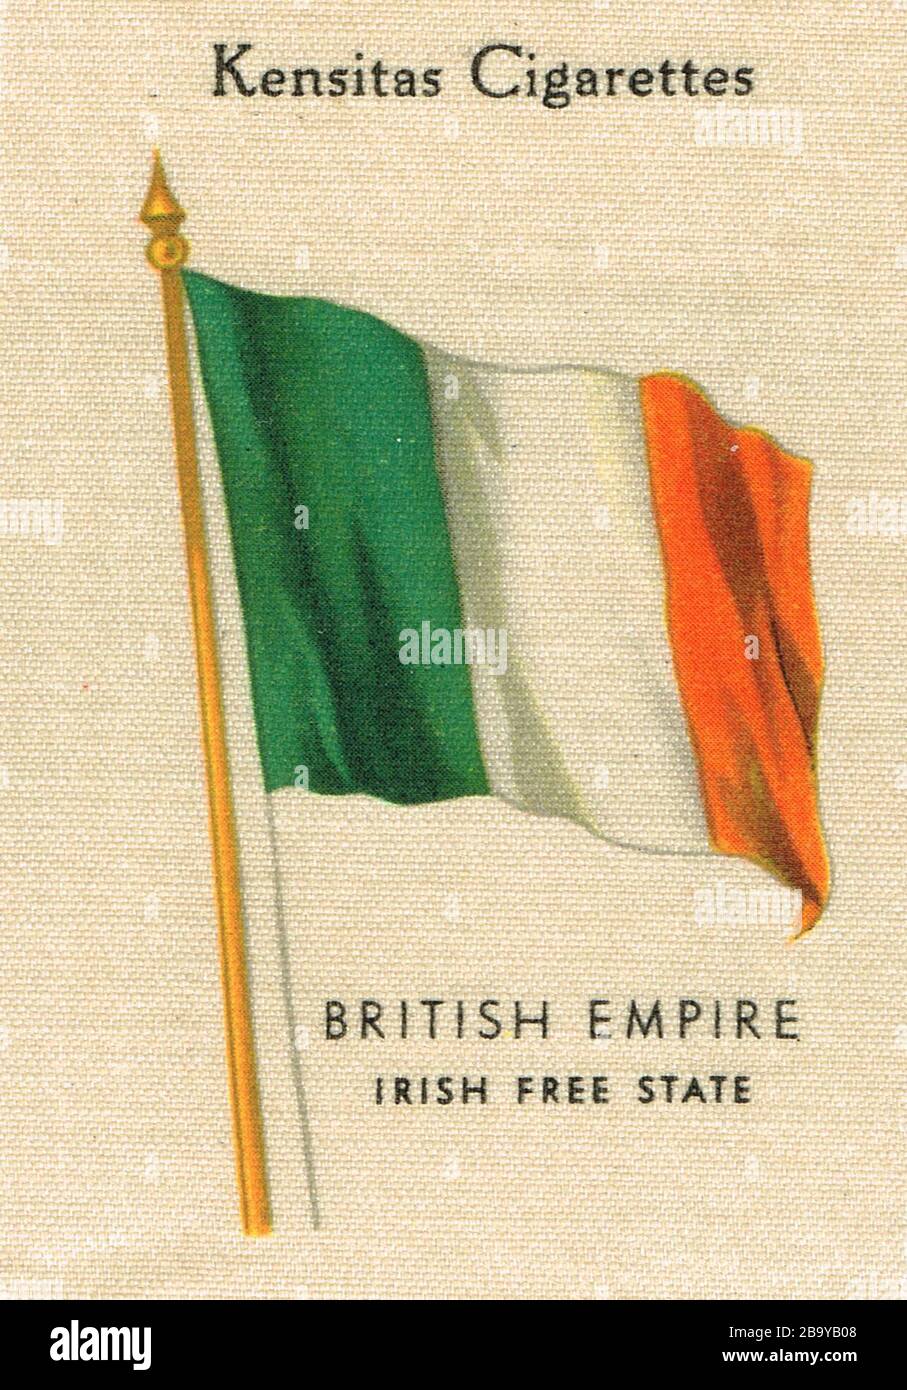 Kensitas bandera de seda de cigarrillos que muestra el Estado libre Irlandés como parte del Imperio Británico (alrededor de 1933) Foto de stock